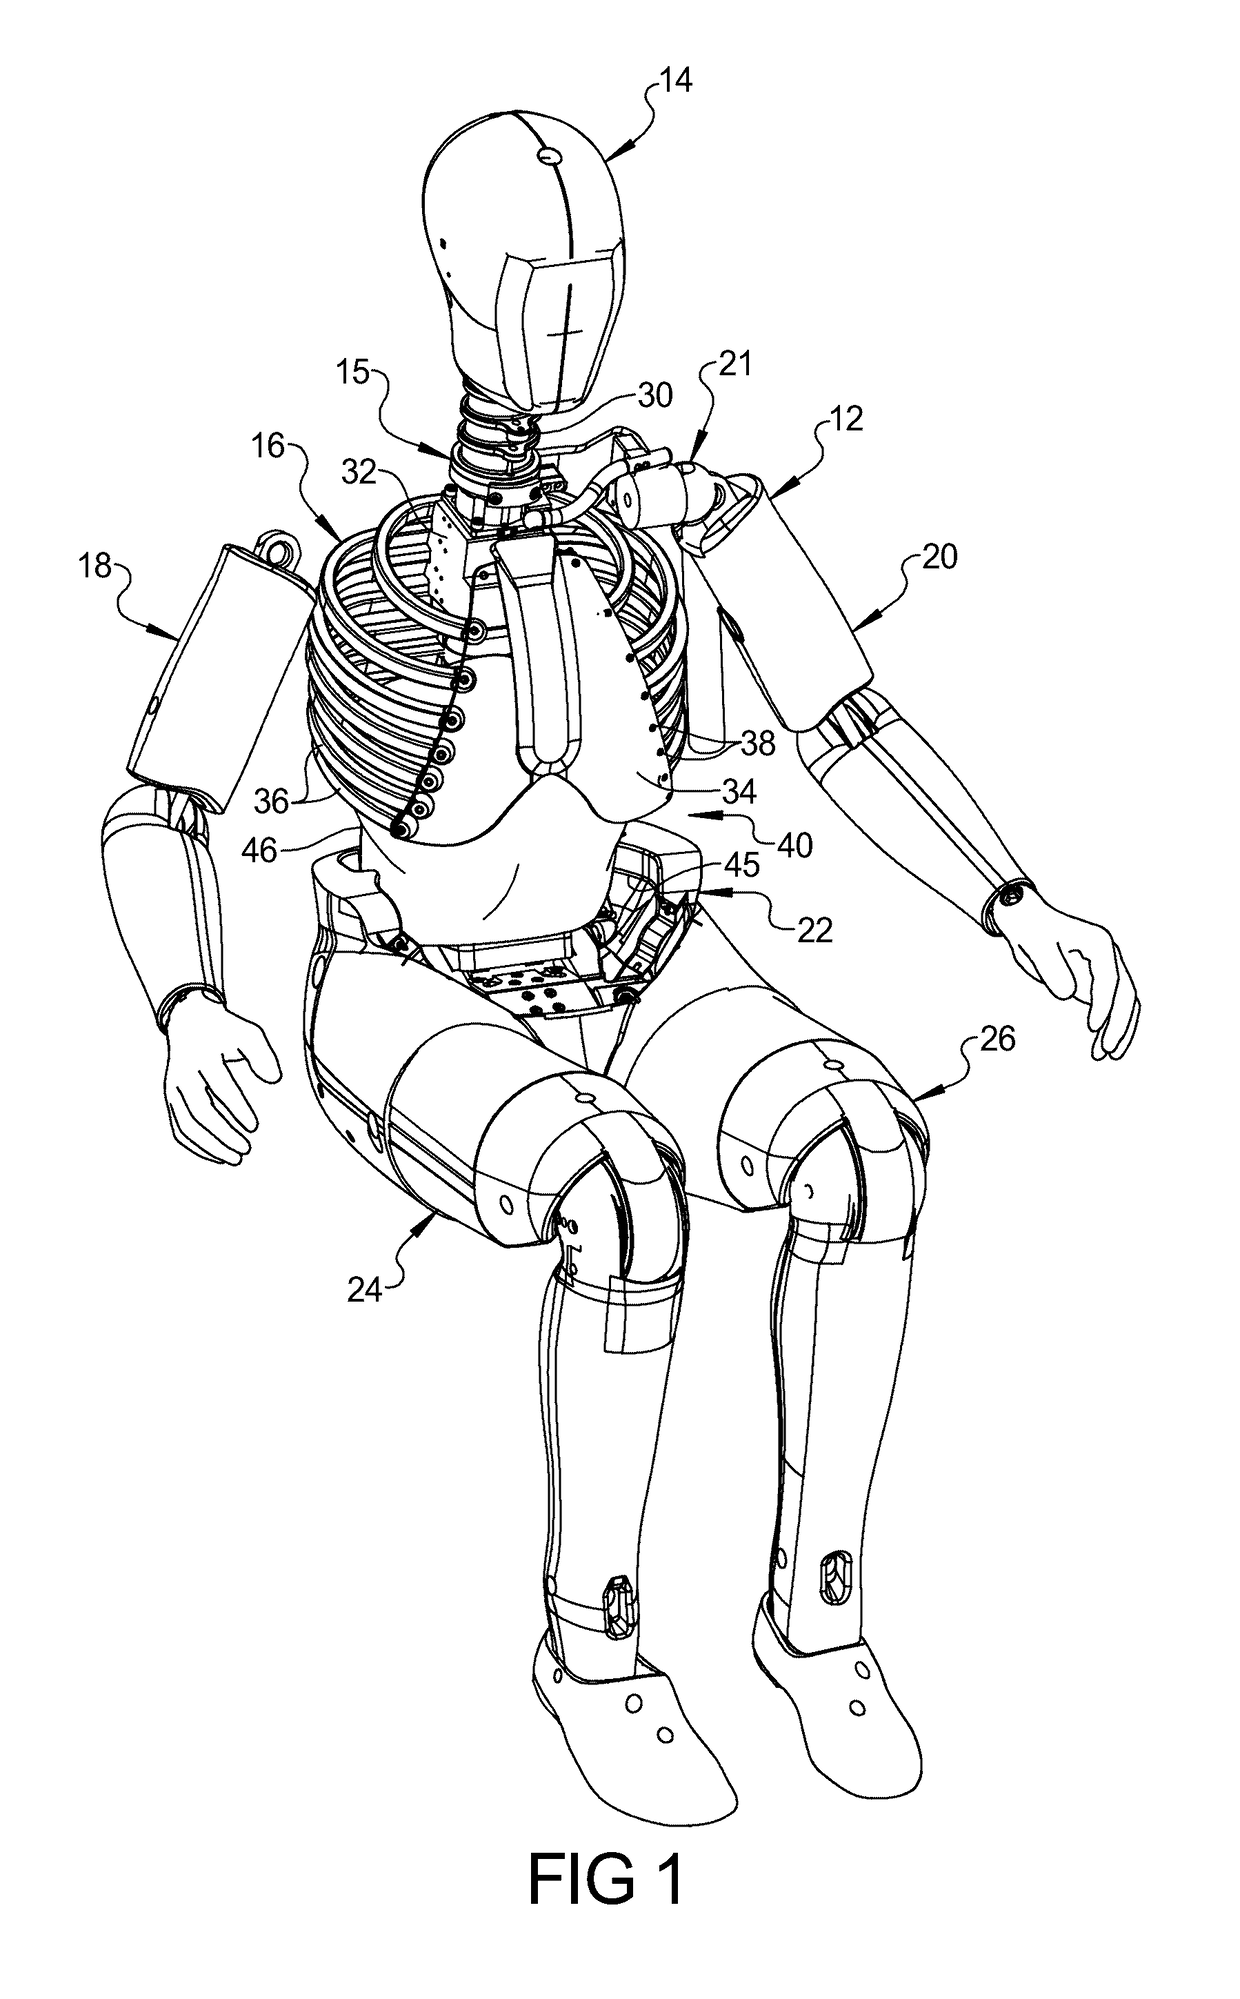 Three-dimensionally printed internal organs for crash test dummy